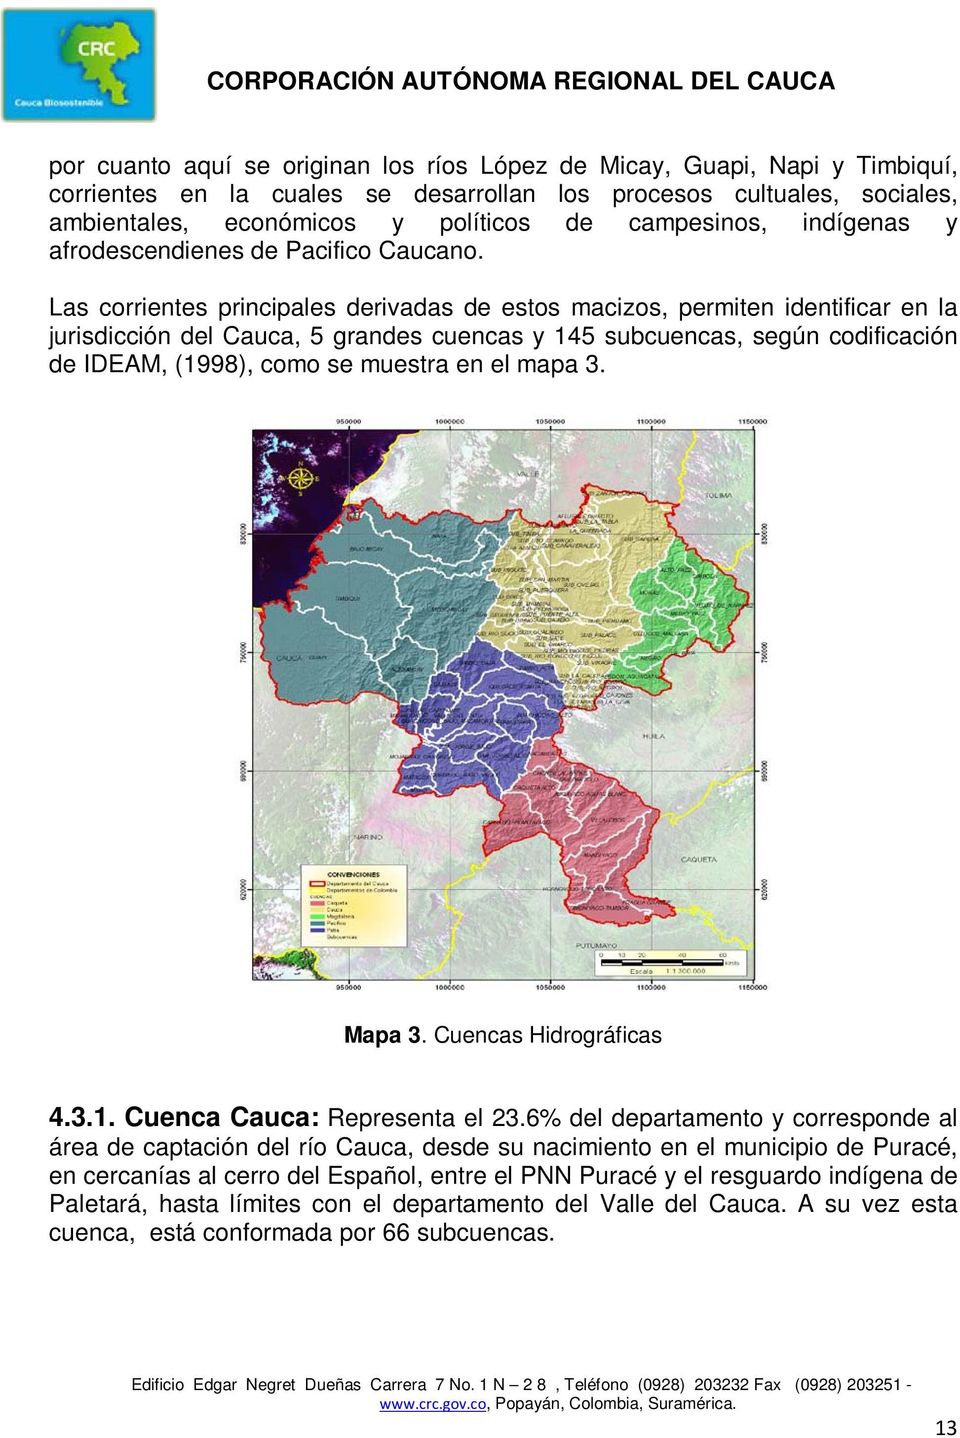 Las corrientes principales derivadas de estos macizos, permiten identificar en la jurisdicción del Cauca, 5 grandes cuencas y 145 subcuencas, según codificación de IDEAM, (1998), como se muestra en